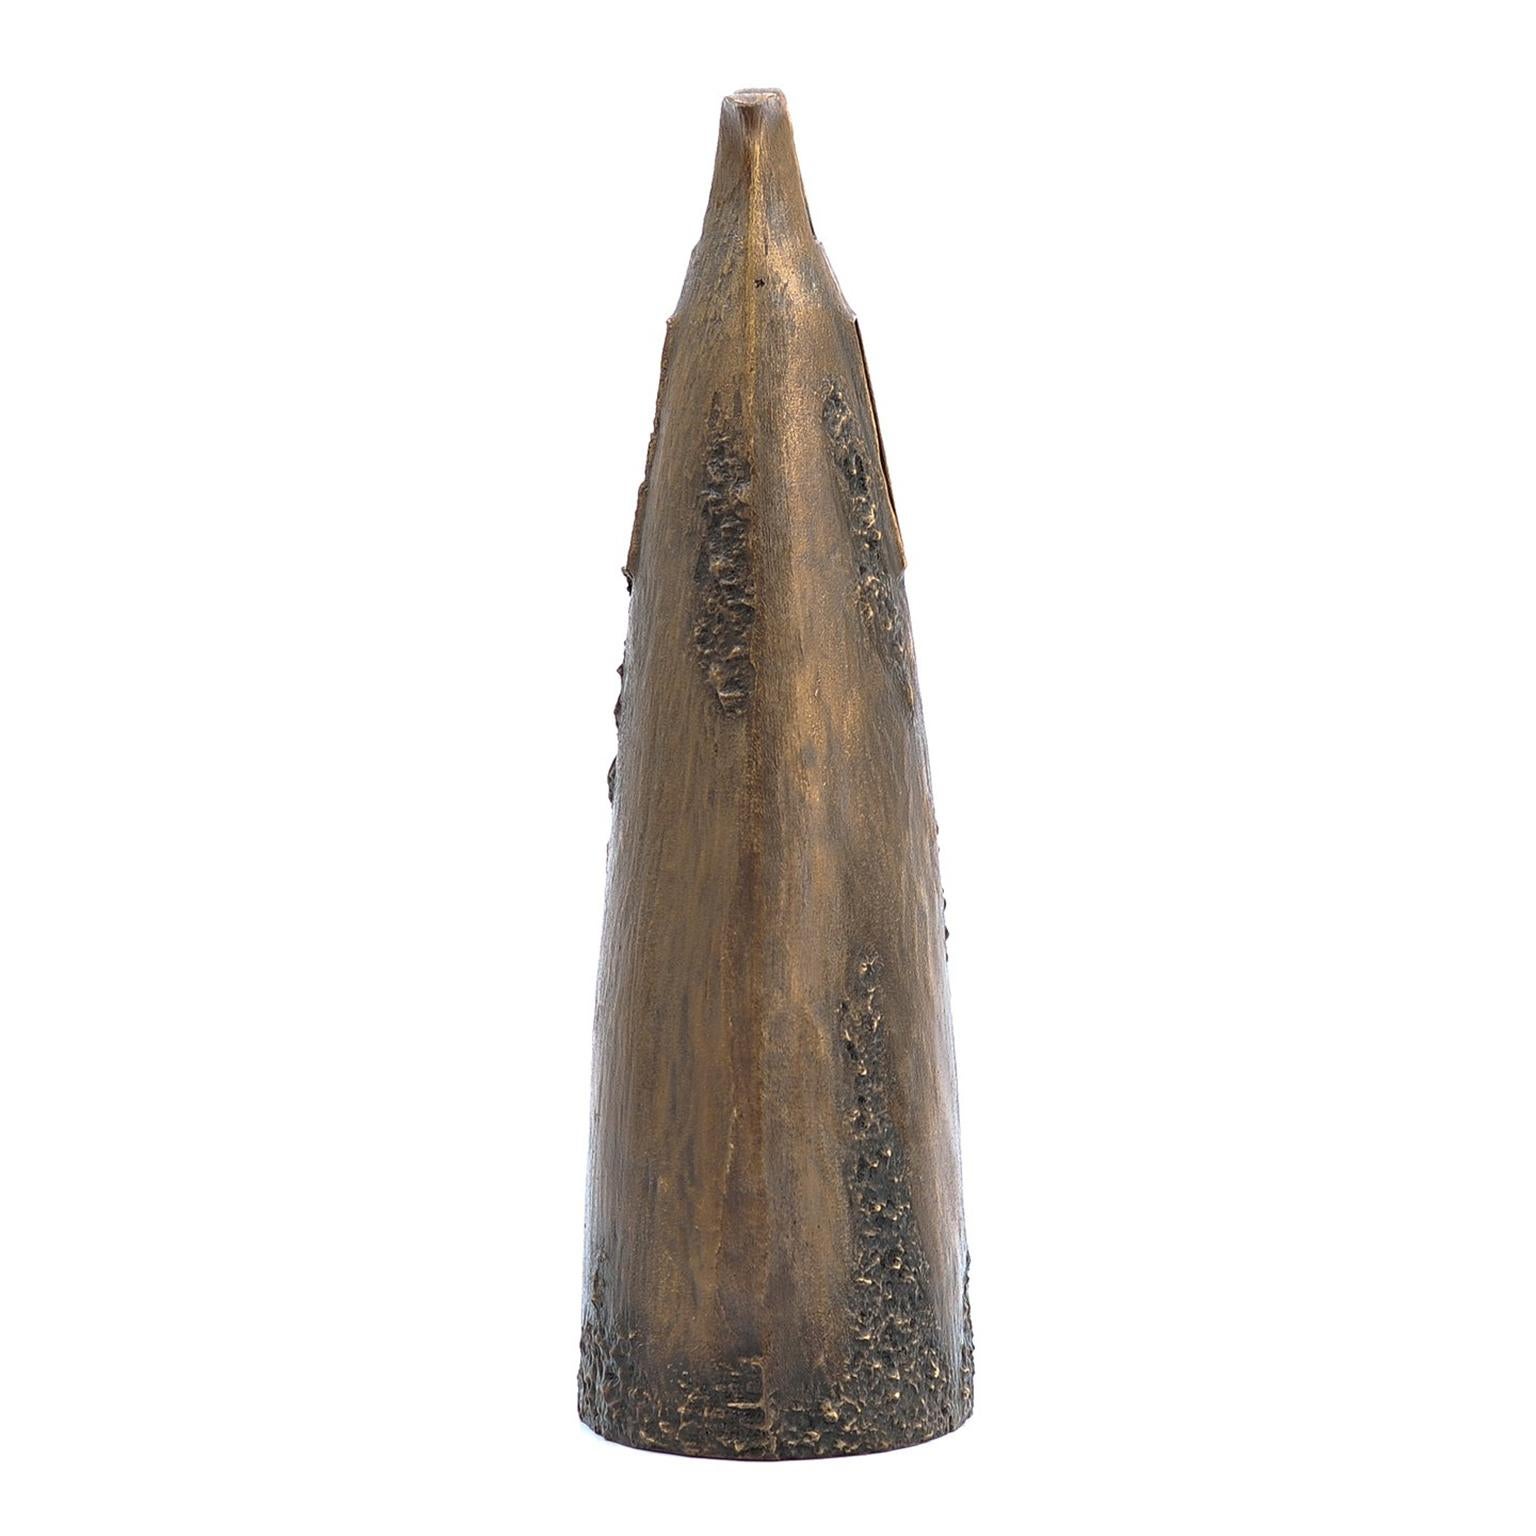 Garrym vase forged from cast dark bronze by Fakasaka.